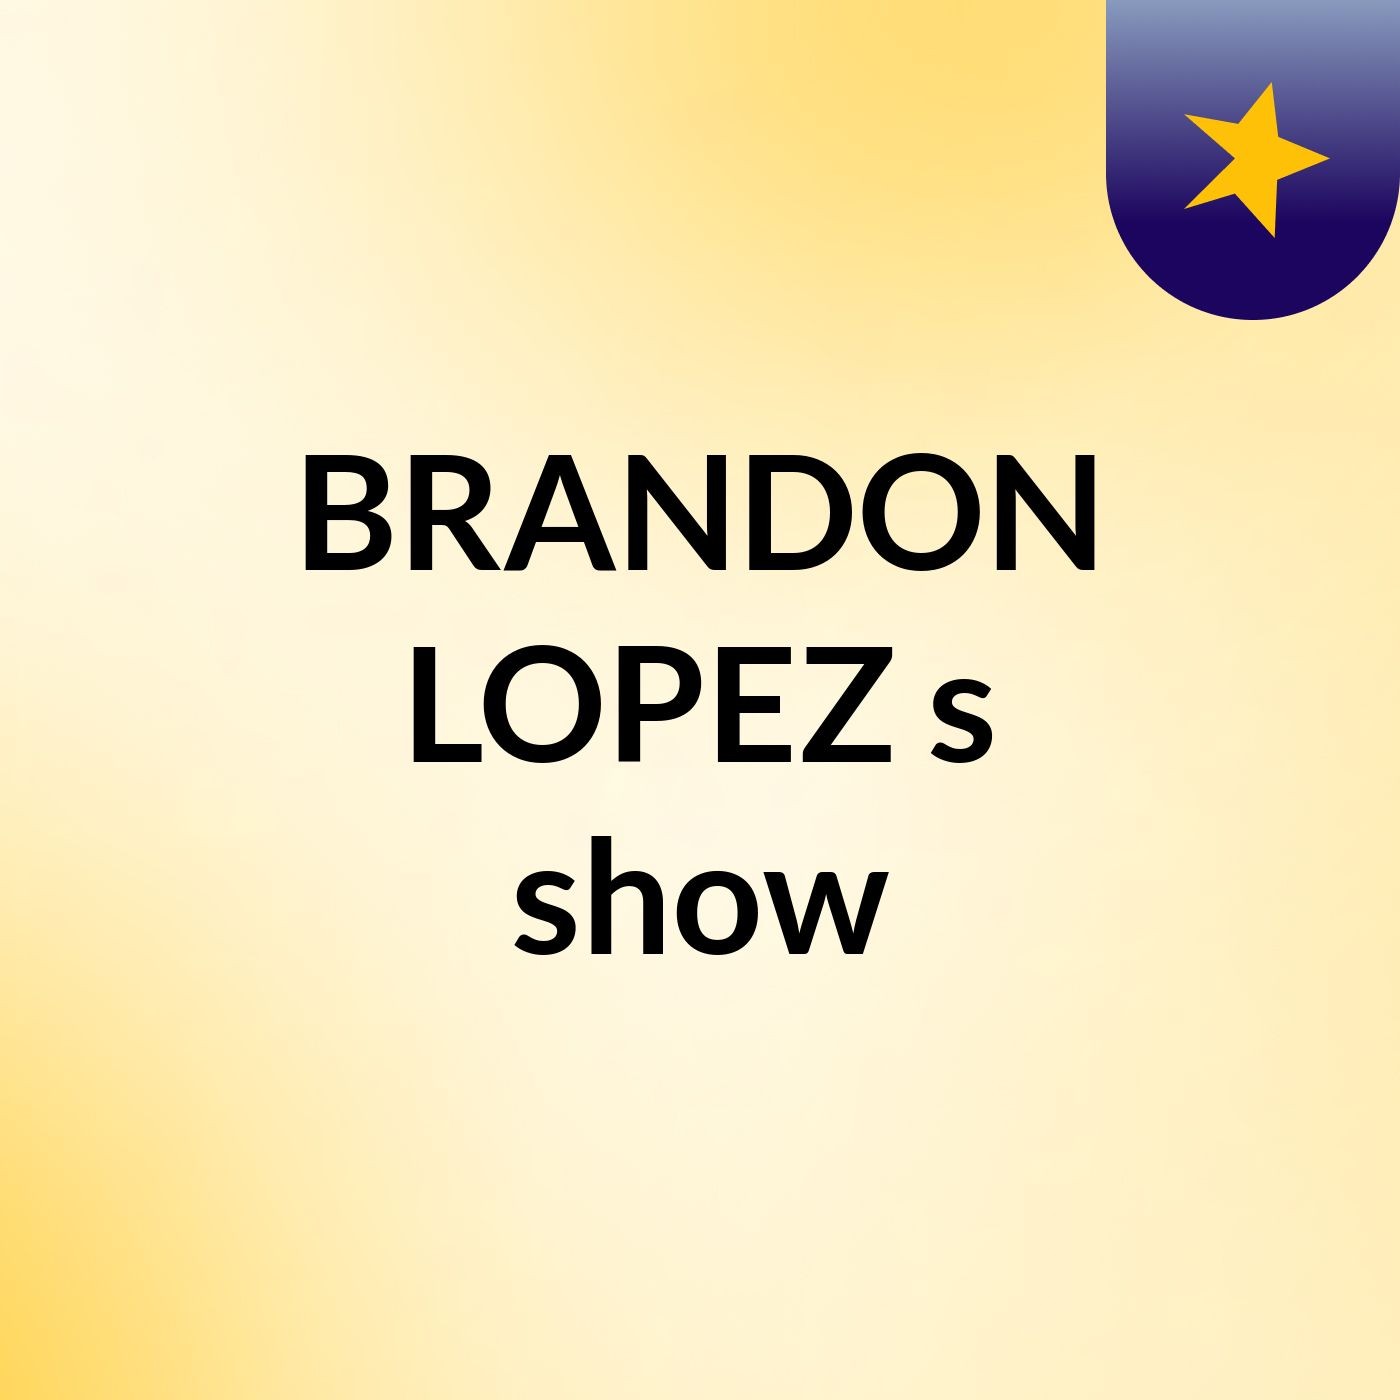 BRANDON LOPEZ's show